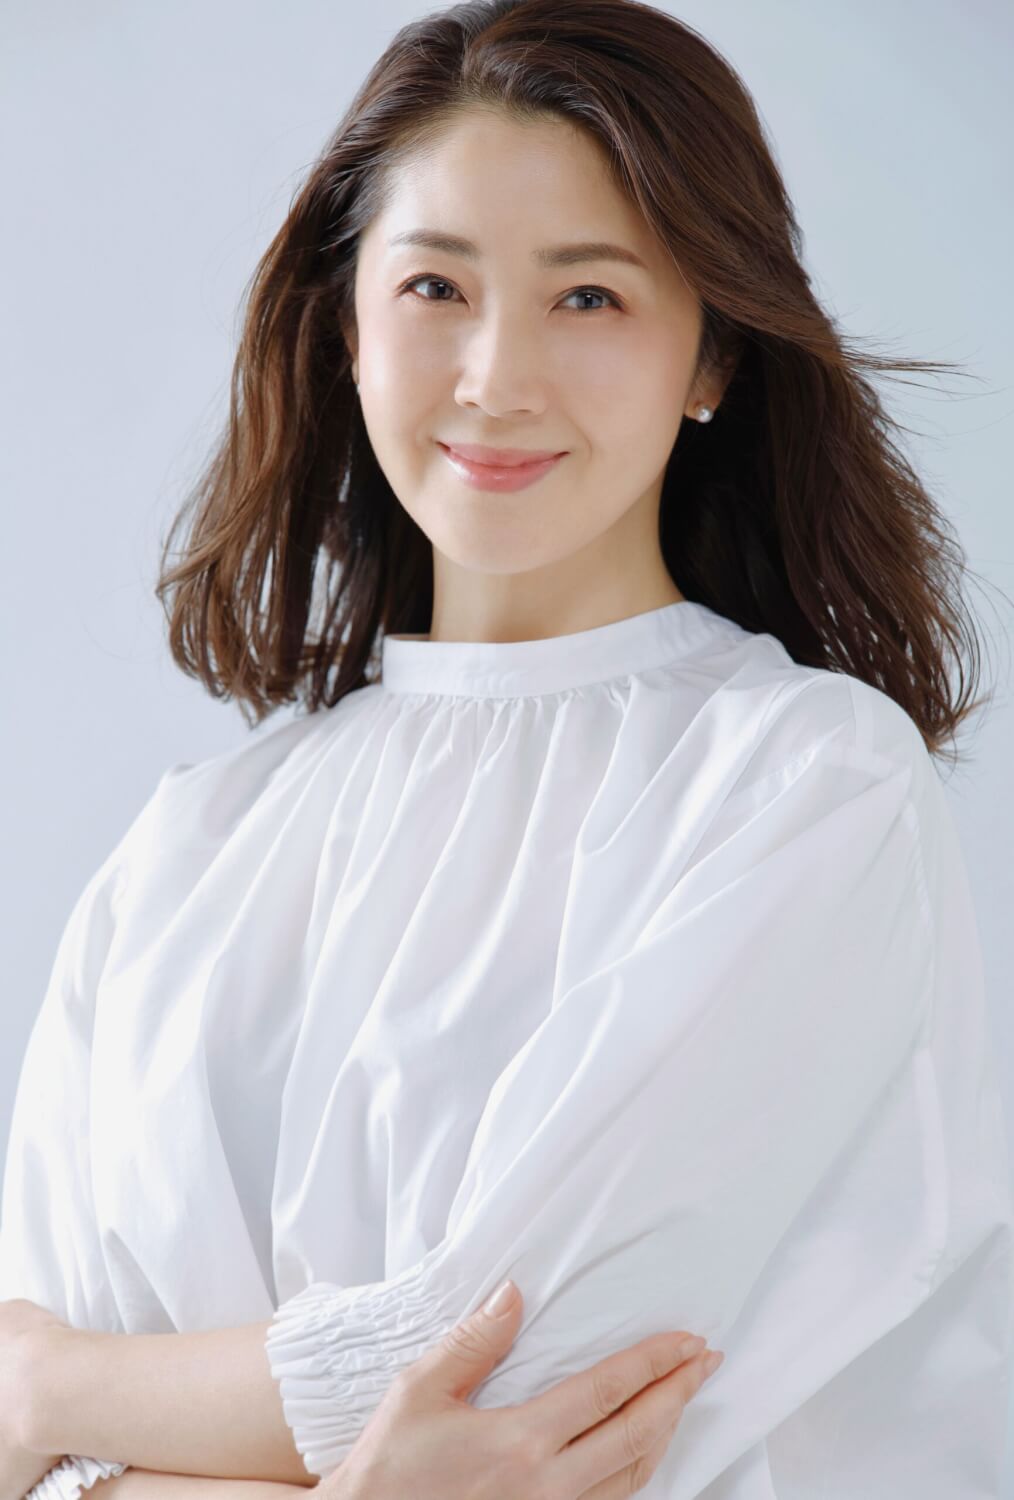 モデル 芦田 桂子